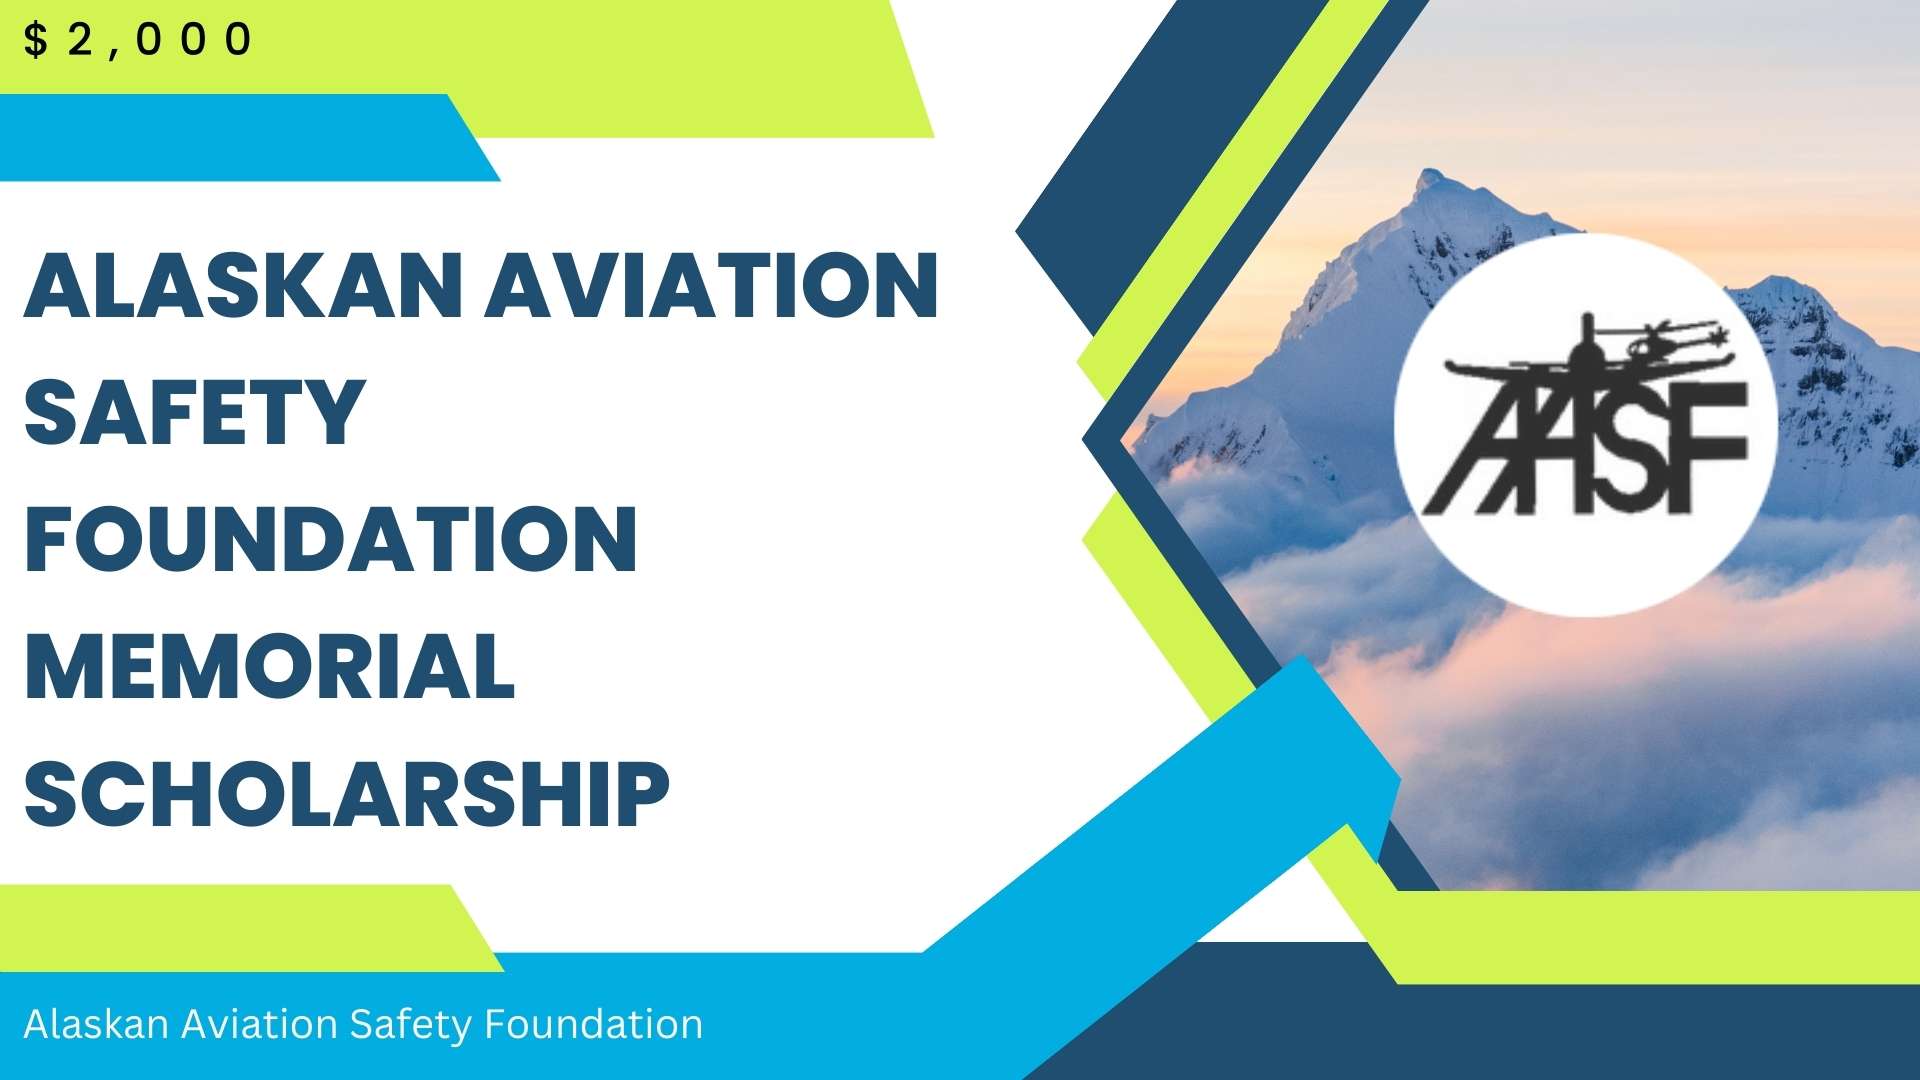 Alaskan Aviation Safety Foundation Memorial Scholarship